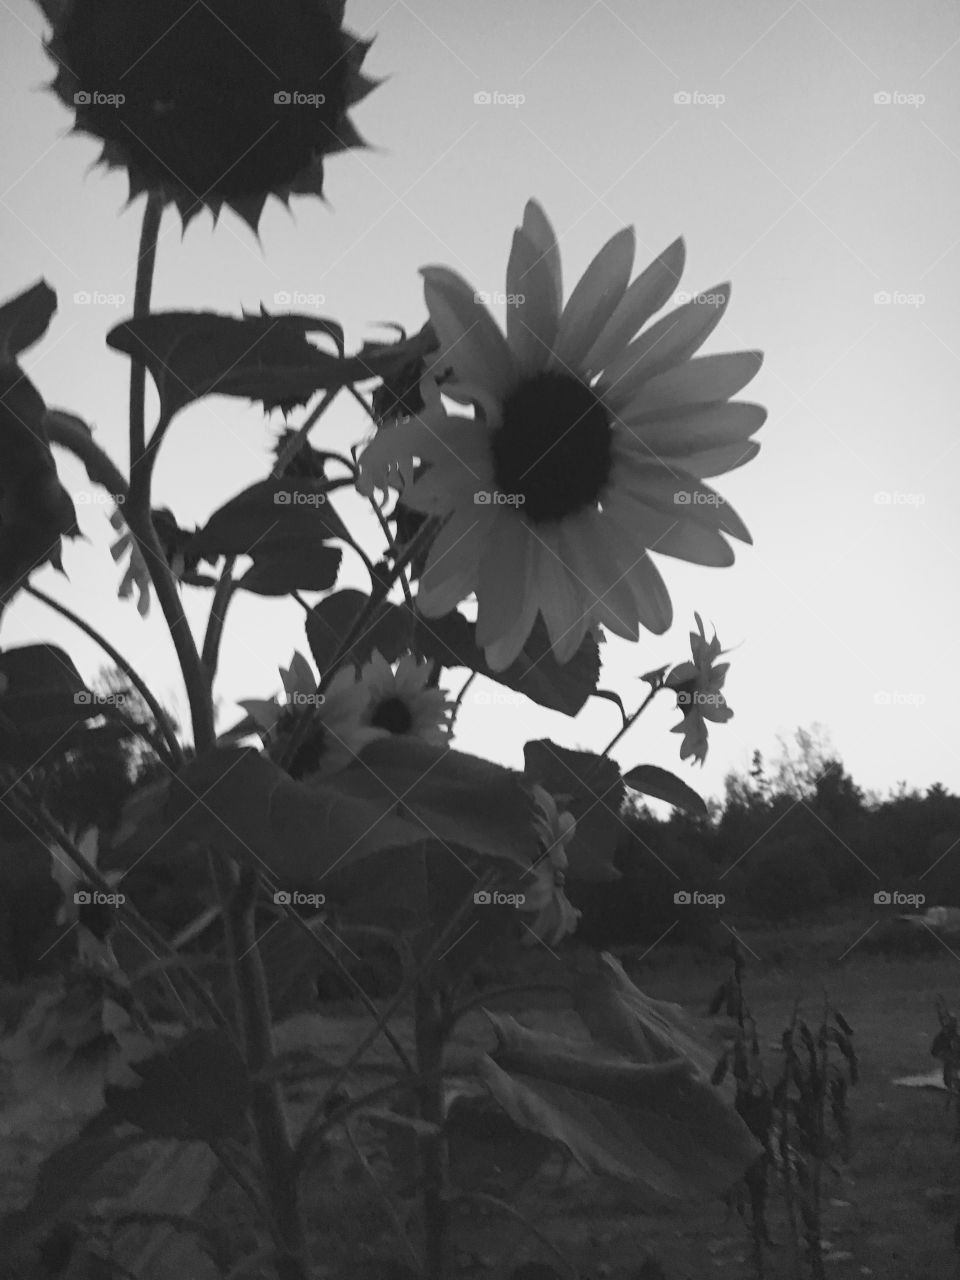 Backyard sunflower